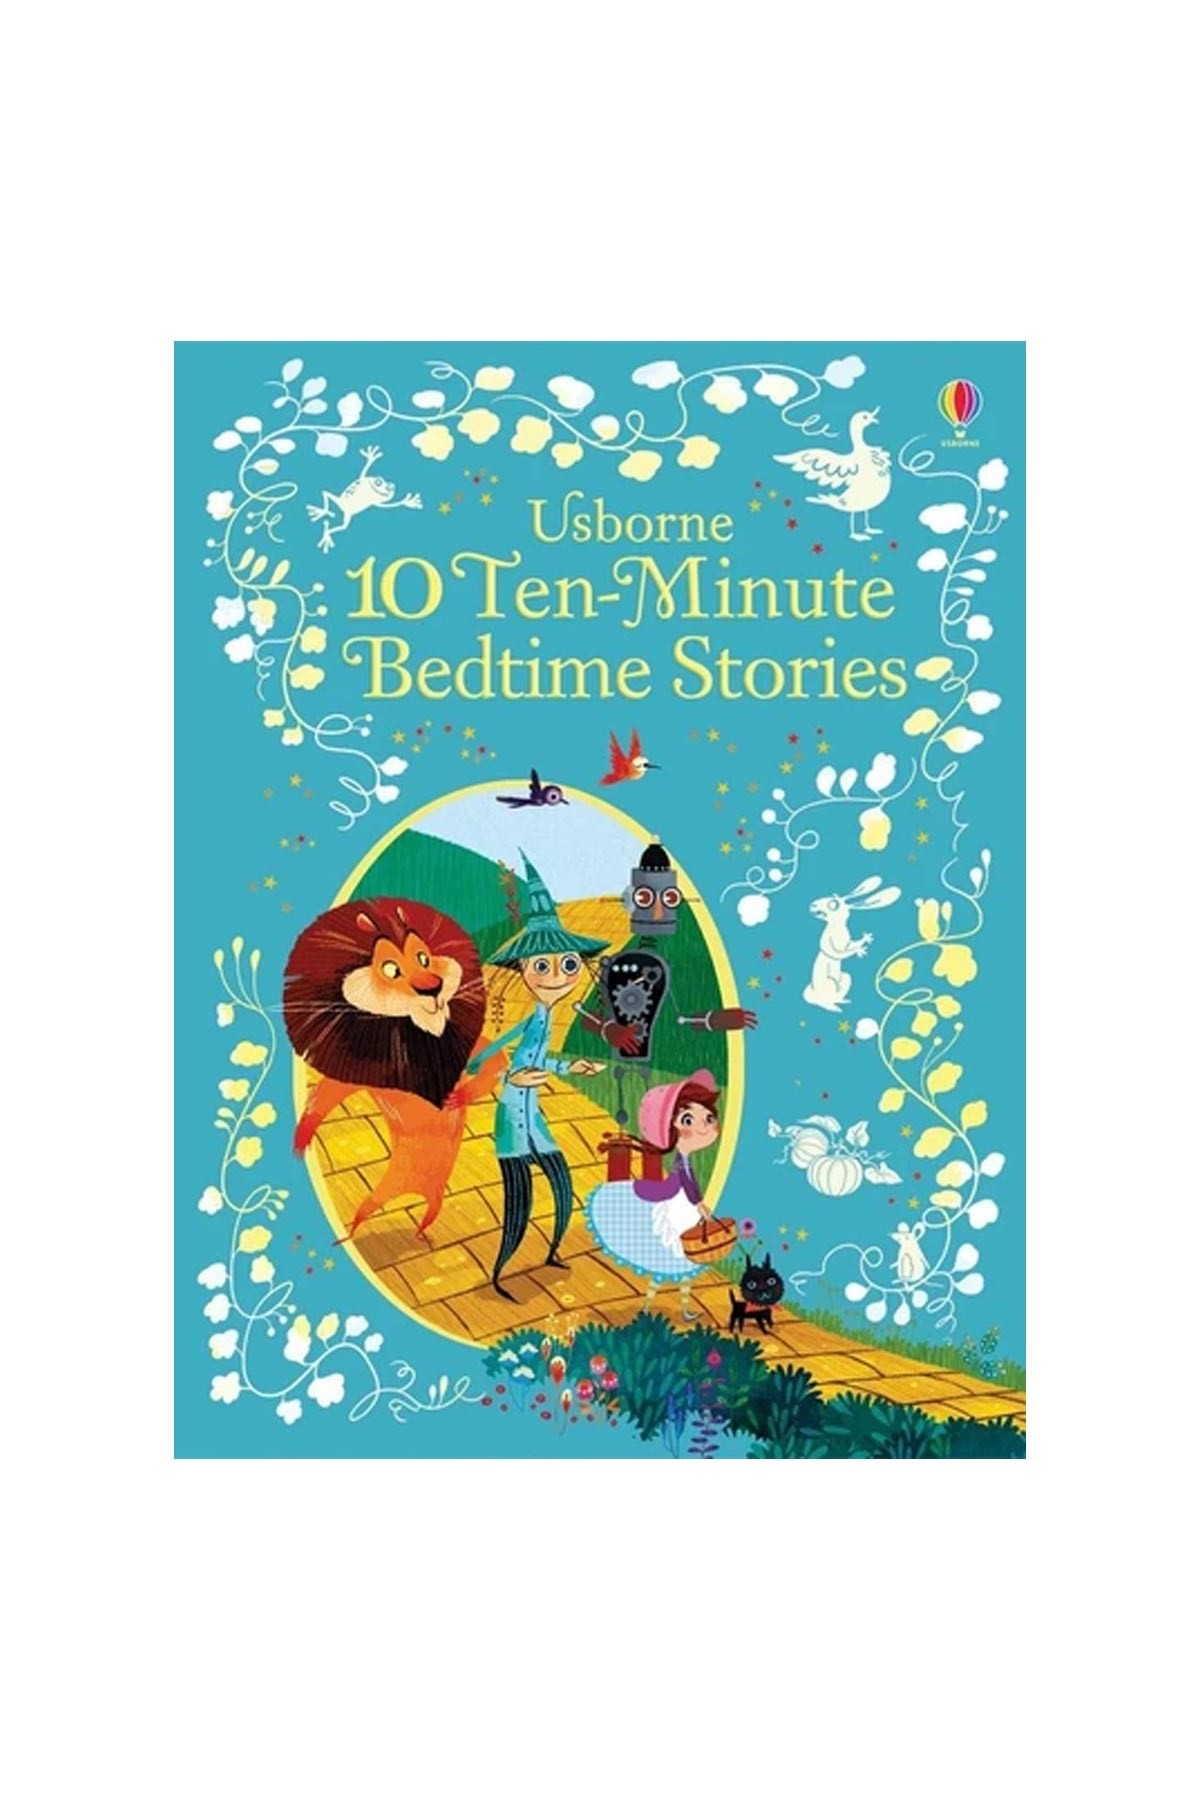 The Usborne 10 Ten-Minute Bedtime Stories